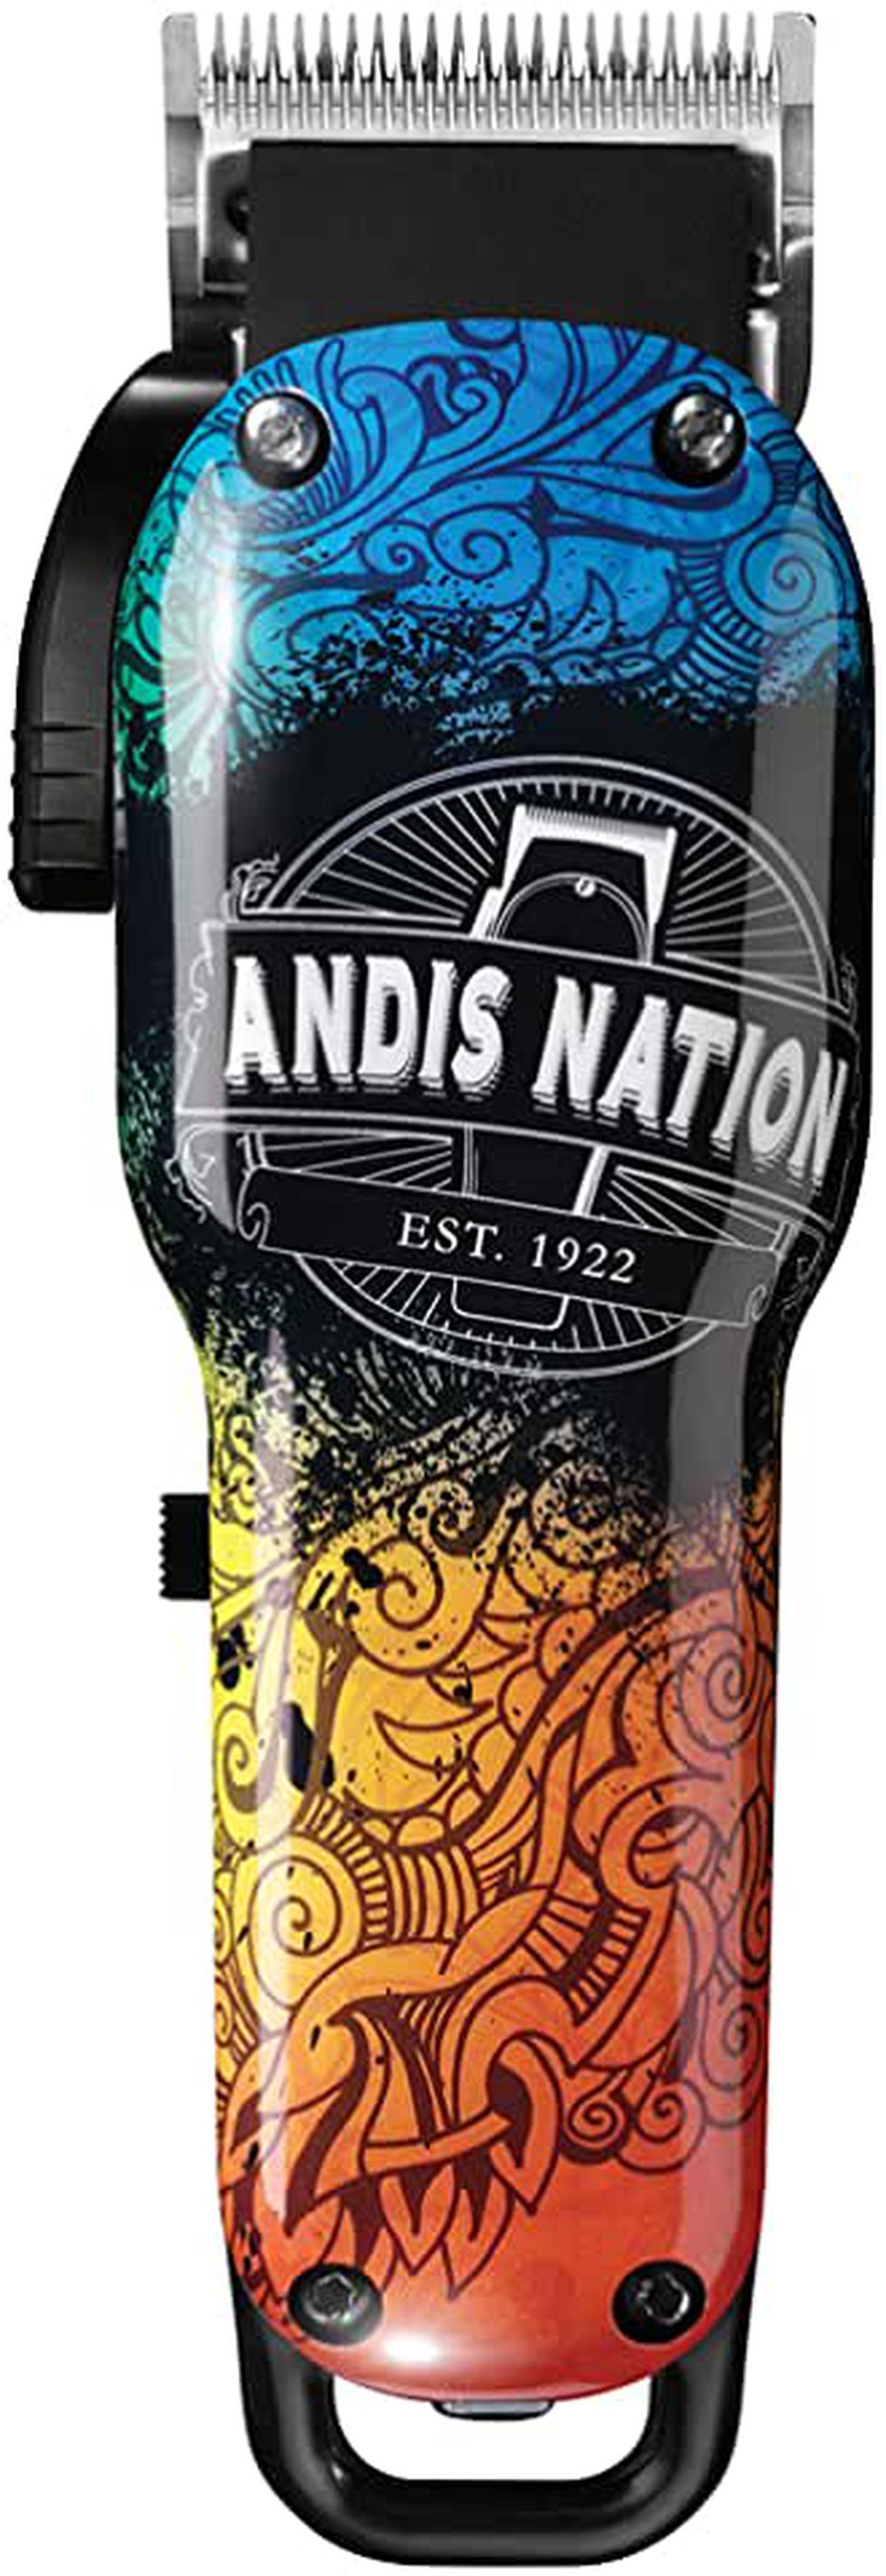 Машинка для стрижки Andis usPRO Fade Li Andis Nation LCL черный (насадок в компл:5шт) фото